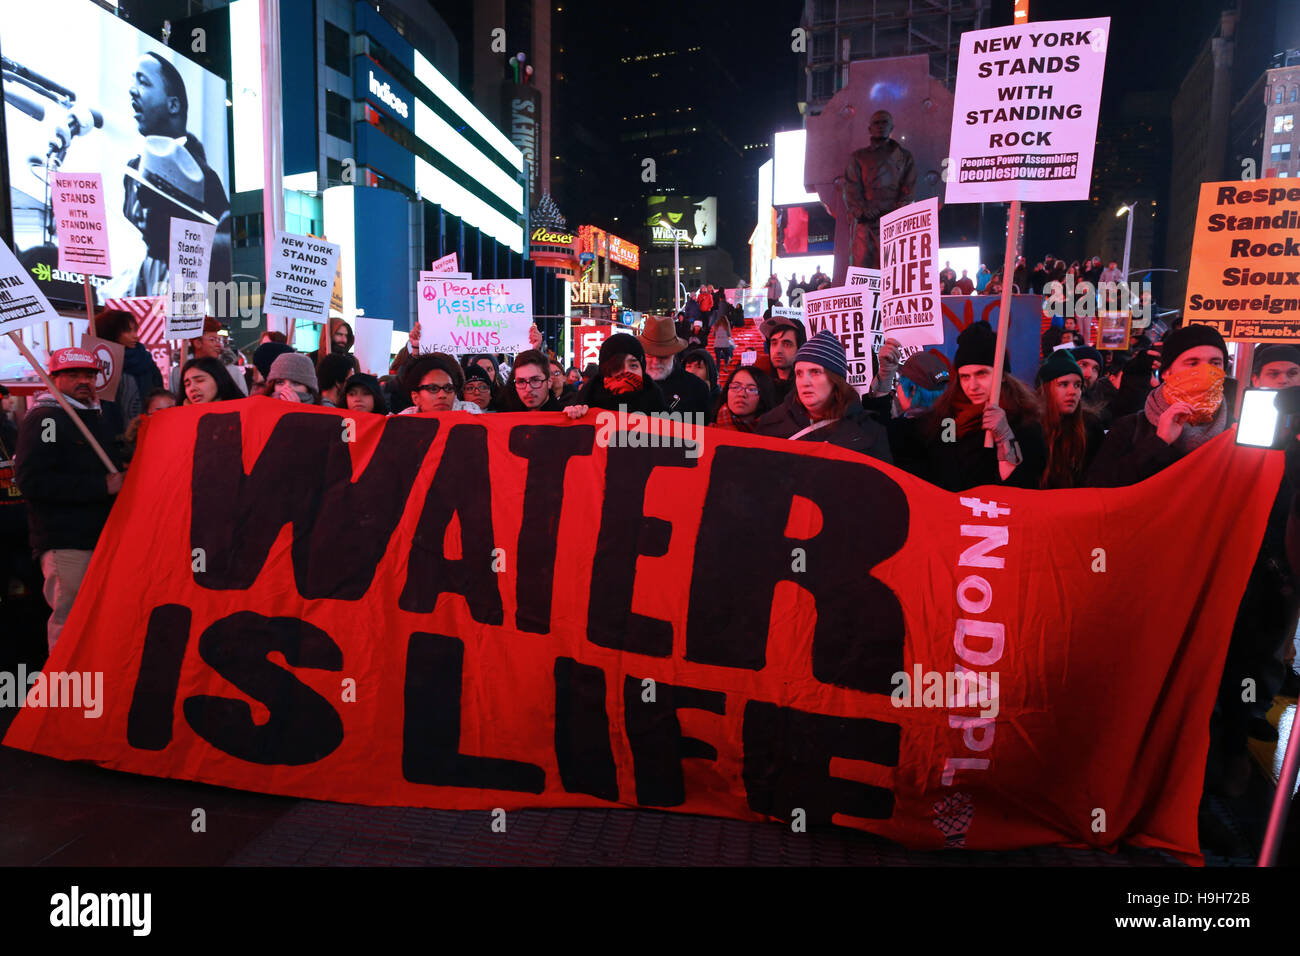 New York, USA. 23. November 2016. Aktivisten halten ein Banner, Wasser ist Leben, in Times Square, New York City. Demonstranten versammelt in Reaktion auf die jüngsten Ereignisse am Standing Rock, North Dakota; und das Gebäude der Dakota Zugang Pipeline zu widersetzen. Stockfoto